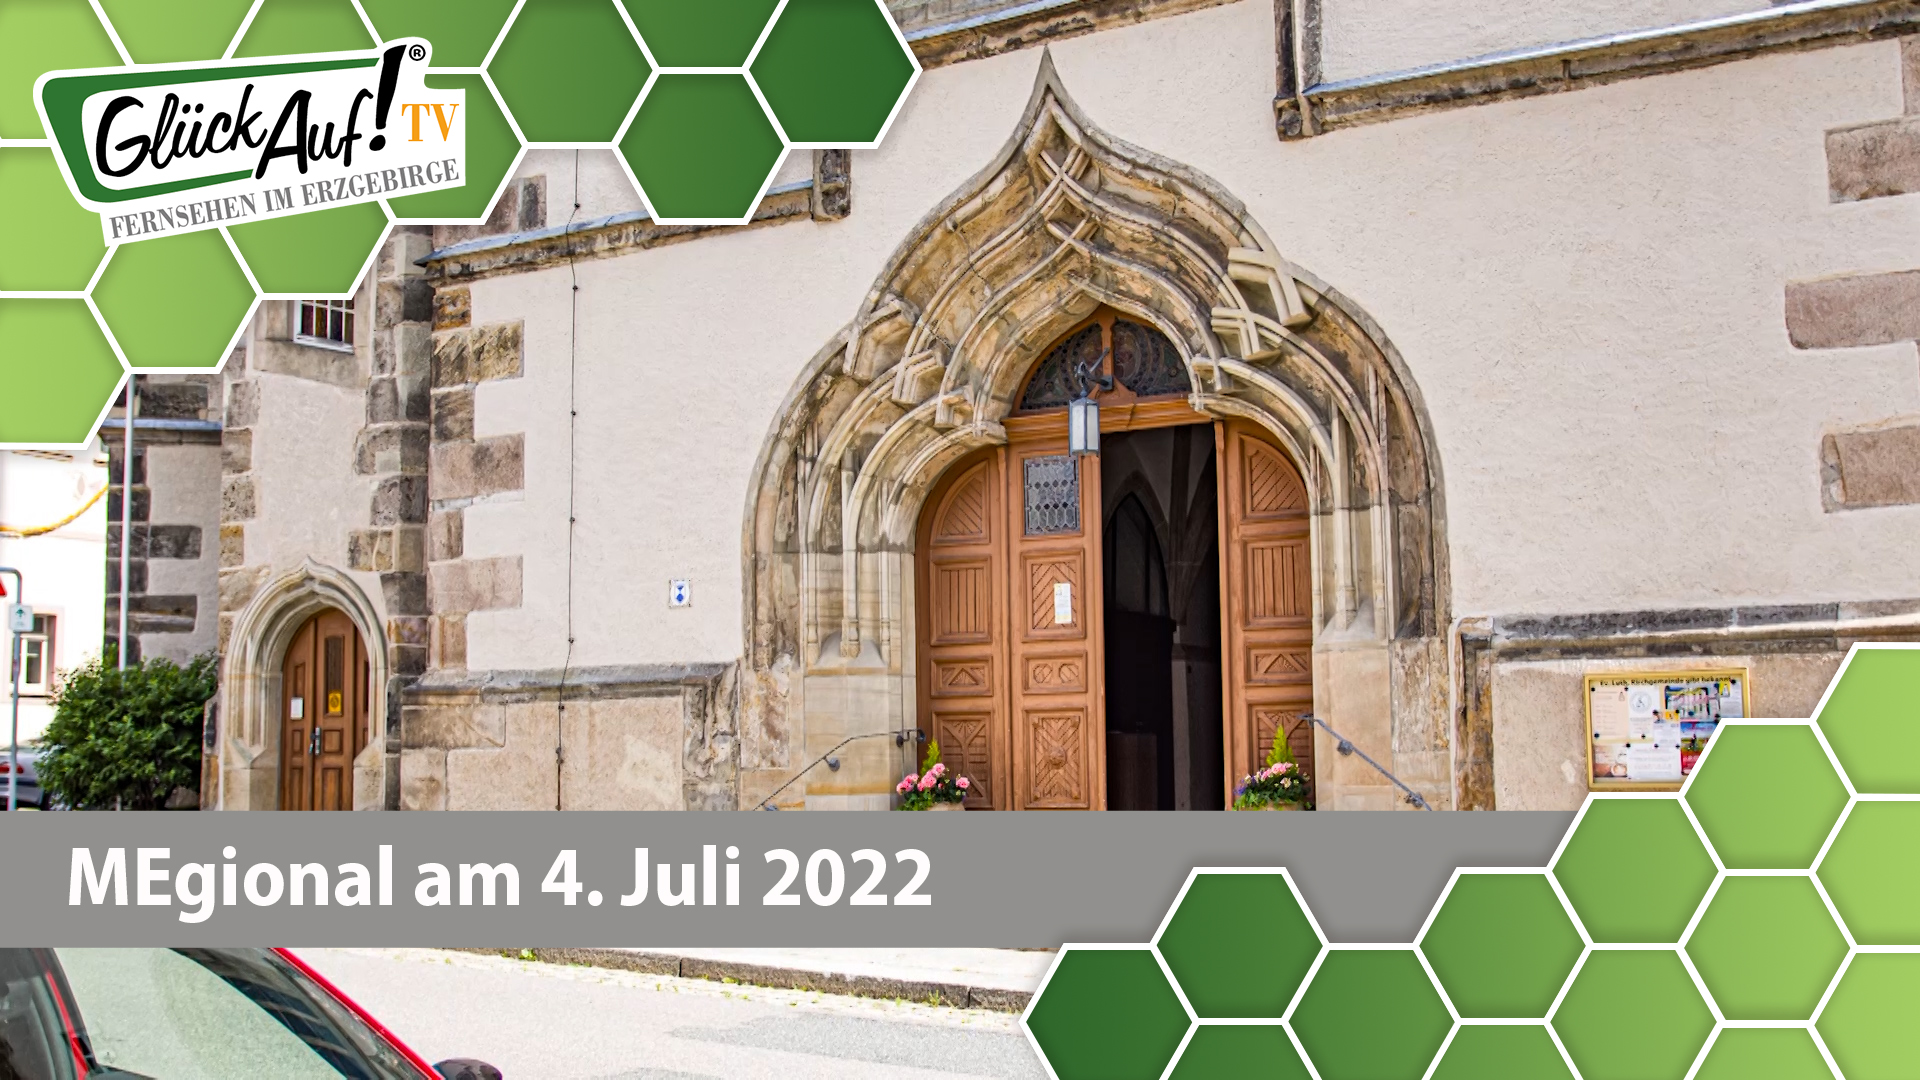 MEgional am 04. Juli 2022 - mit einer Auszeichnung für die Stadtkirche St. Marien